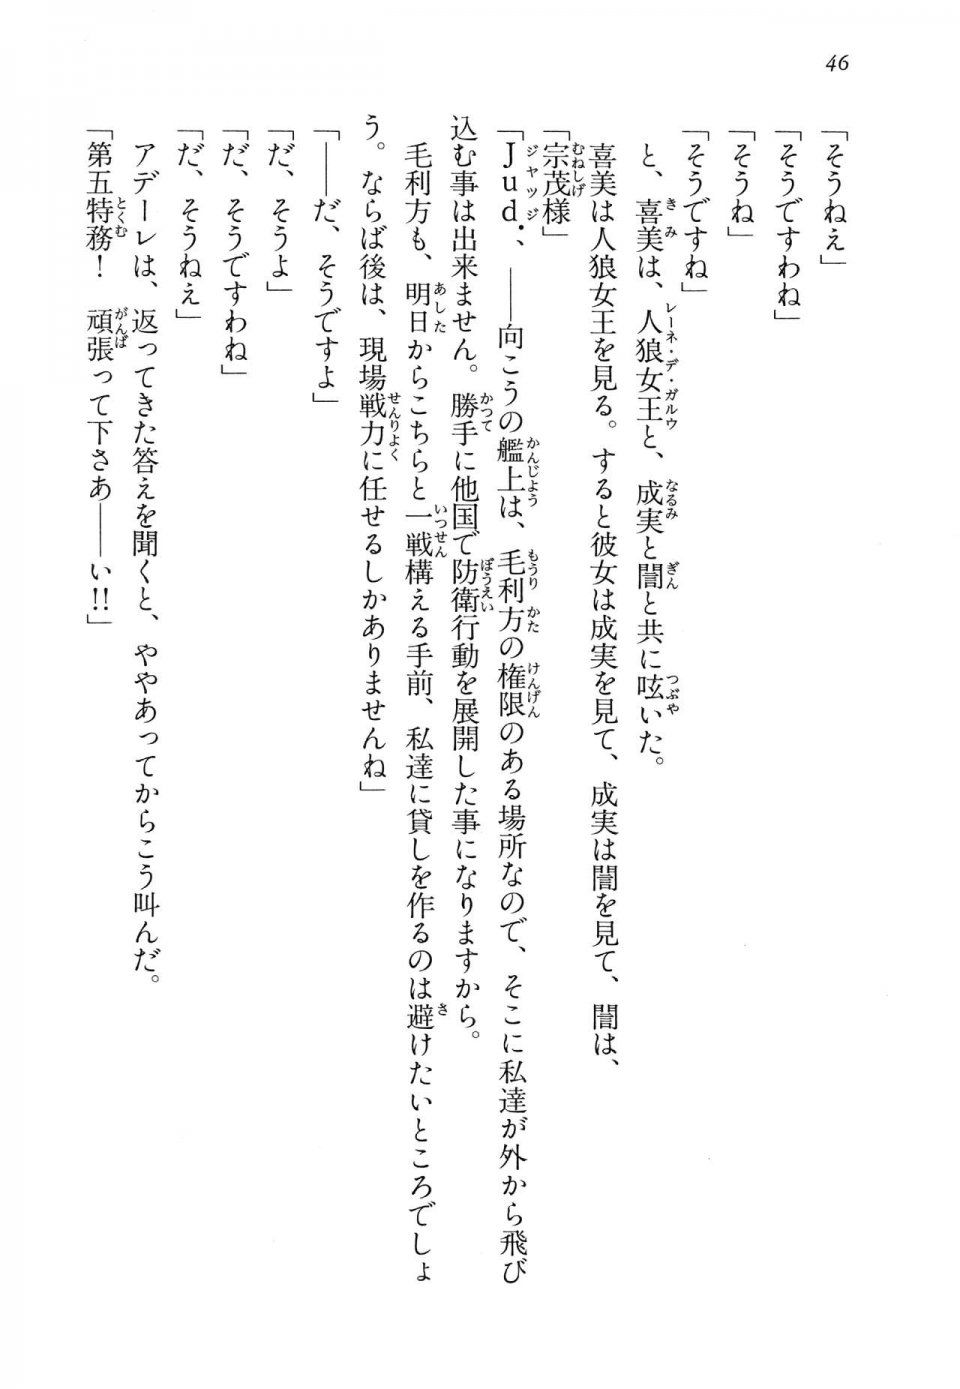 Kyoukai Senjou no Horizon LN Vol 14(6B) - Photo #46